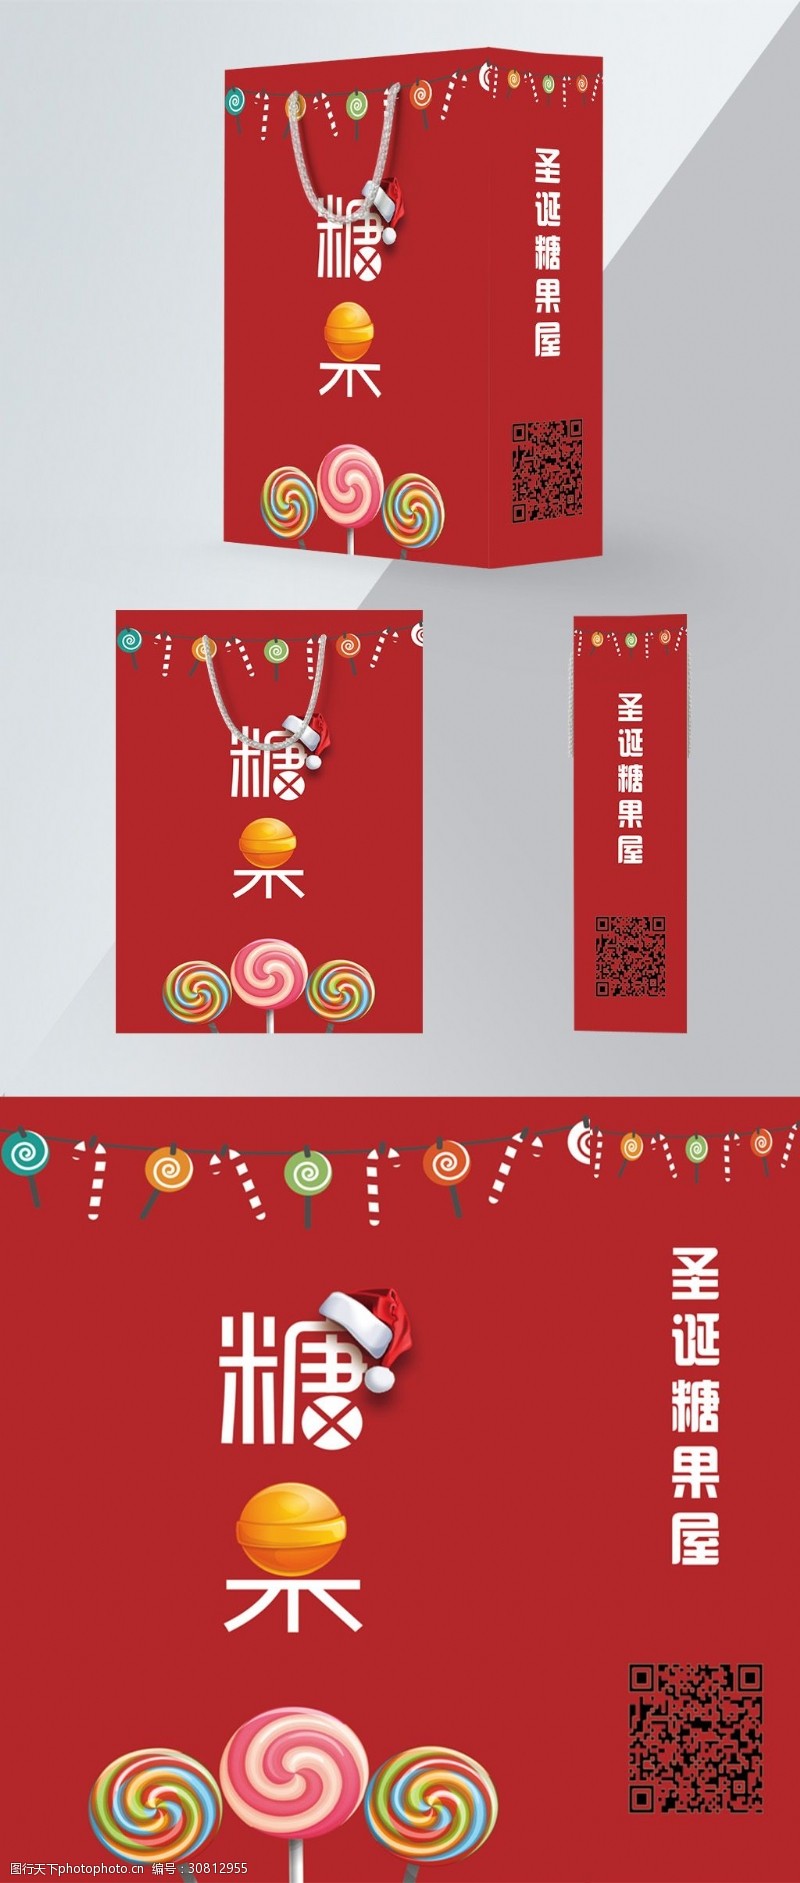 食品包装设计红色喜庆圣诞节糖果美食产品包装手提袋